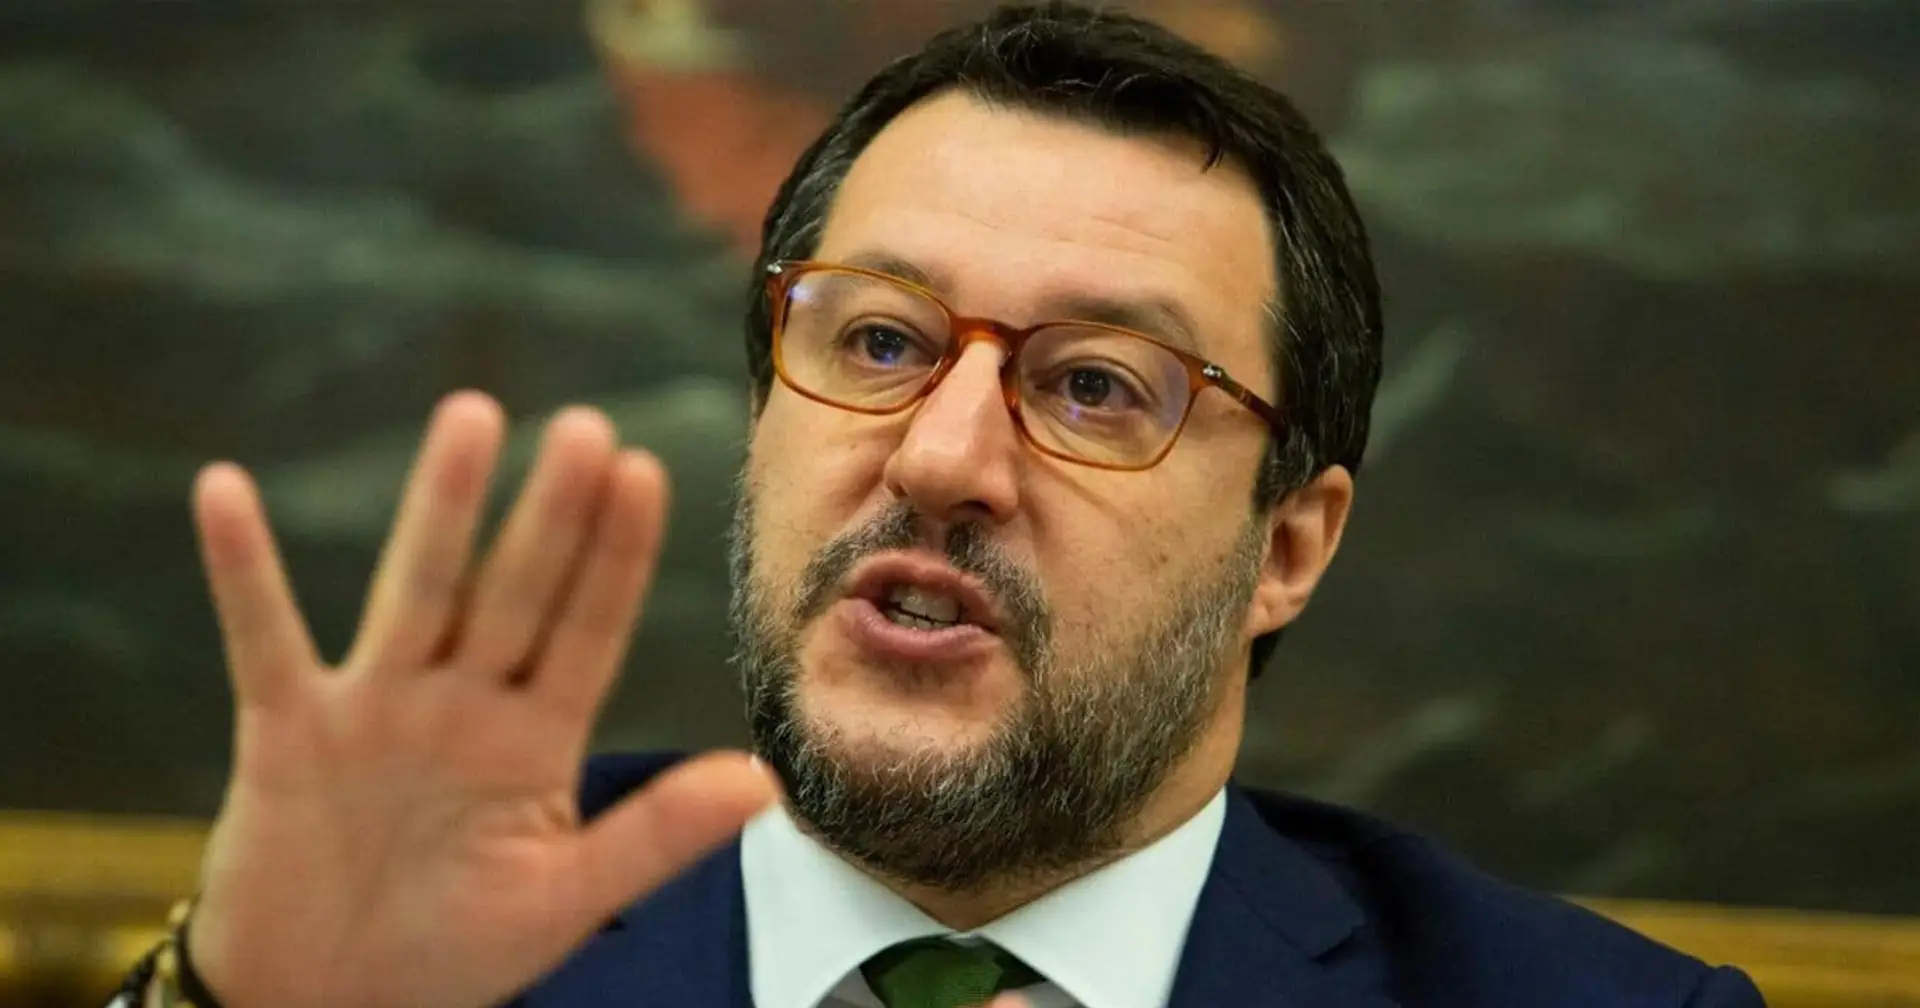 Salvini spinge per la ripresa: "In ballo centinaia di migliaia di posti di lavoro. E no, non parlo di Ronaldo"